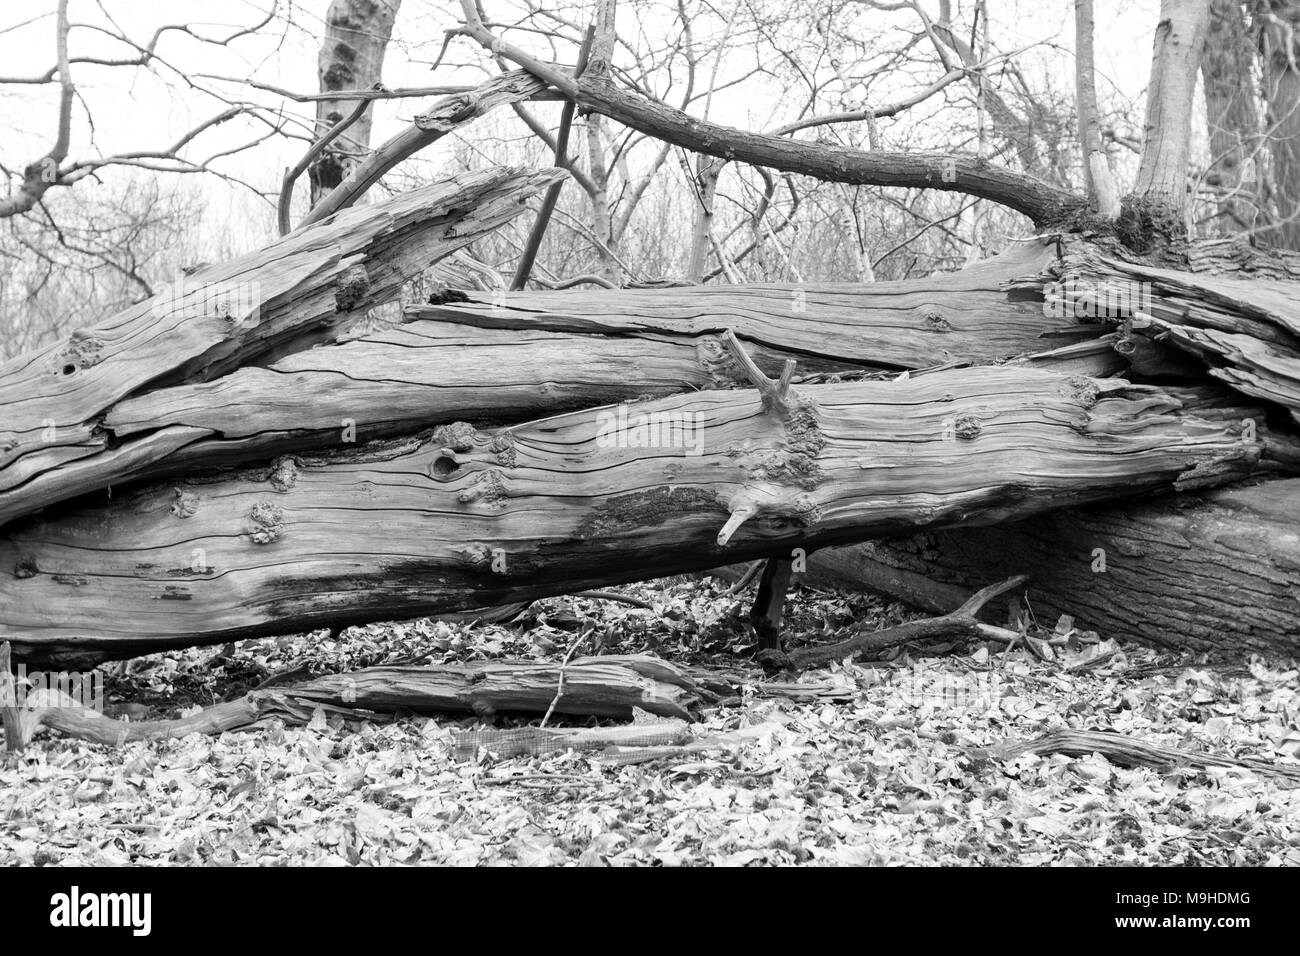 Fallen sweet chestnut tree a cassé en deux endroits qu'elle a heurté le sol et a été brisé sur un autre arbre tombé avec des feuilles autour de - noir et blanc Banque D'Images